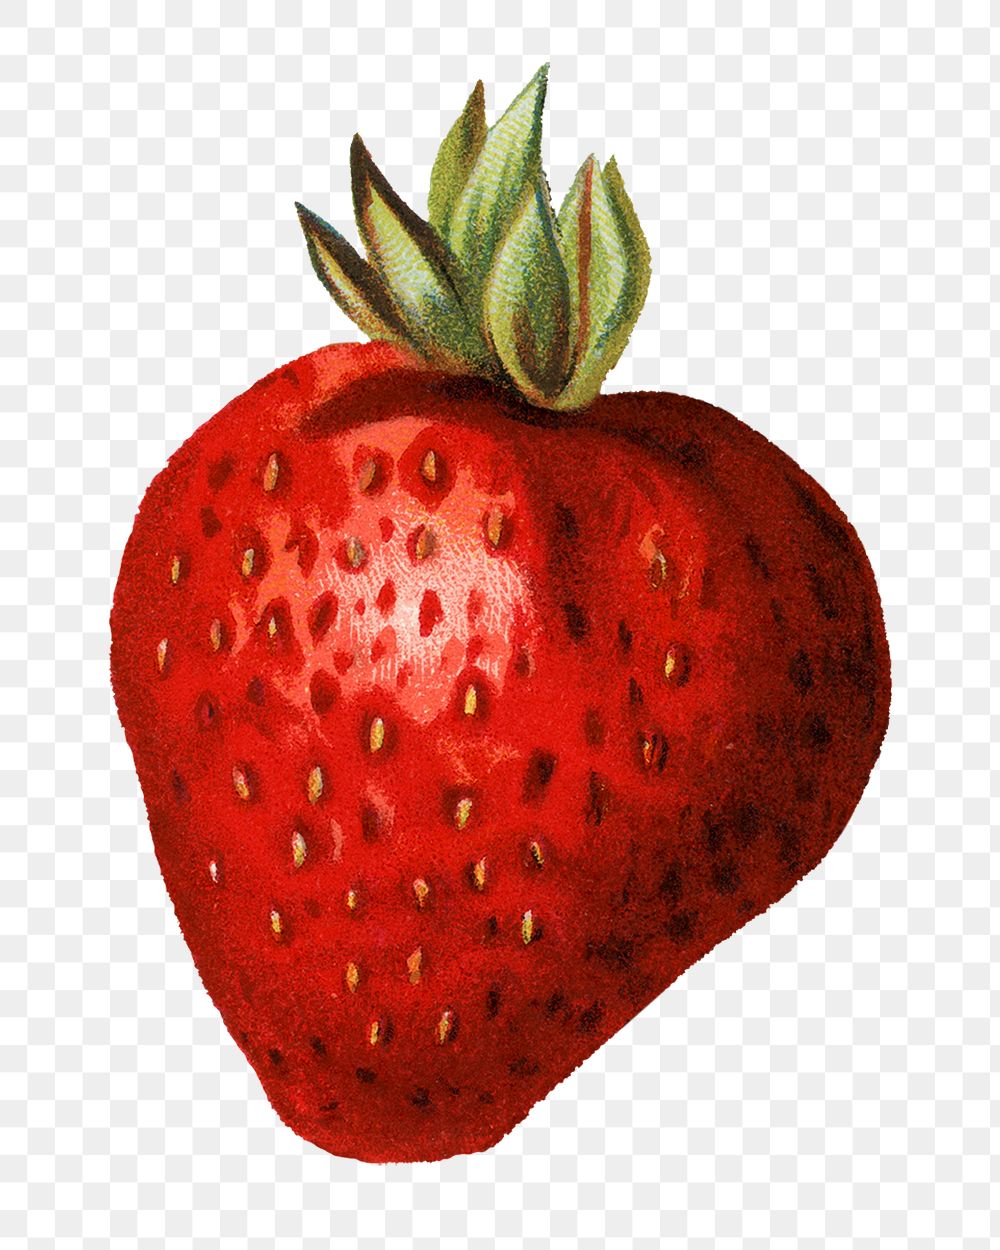 Strawberry fruit illustration png sticker, transparent background